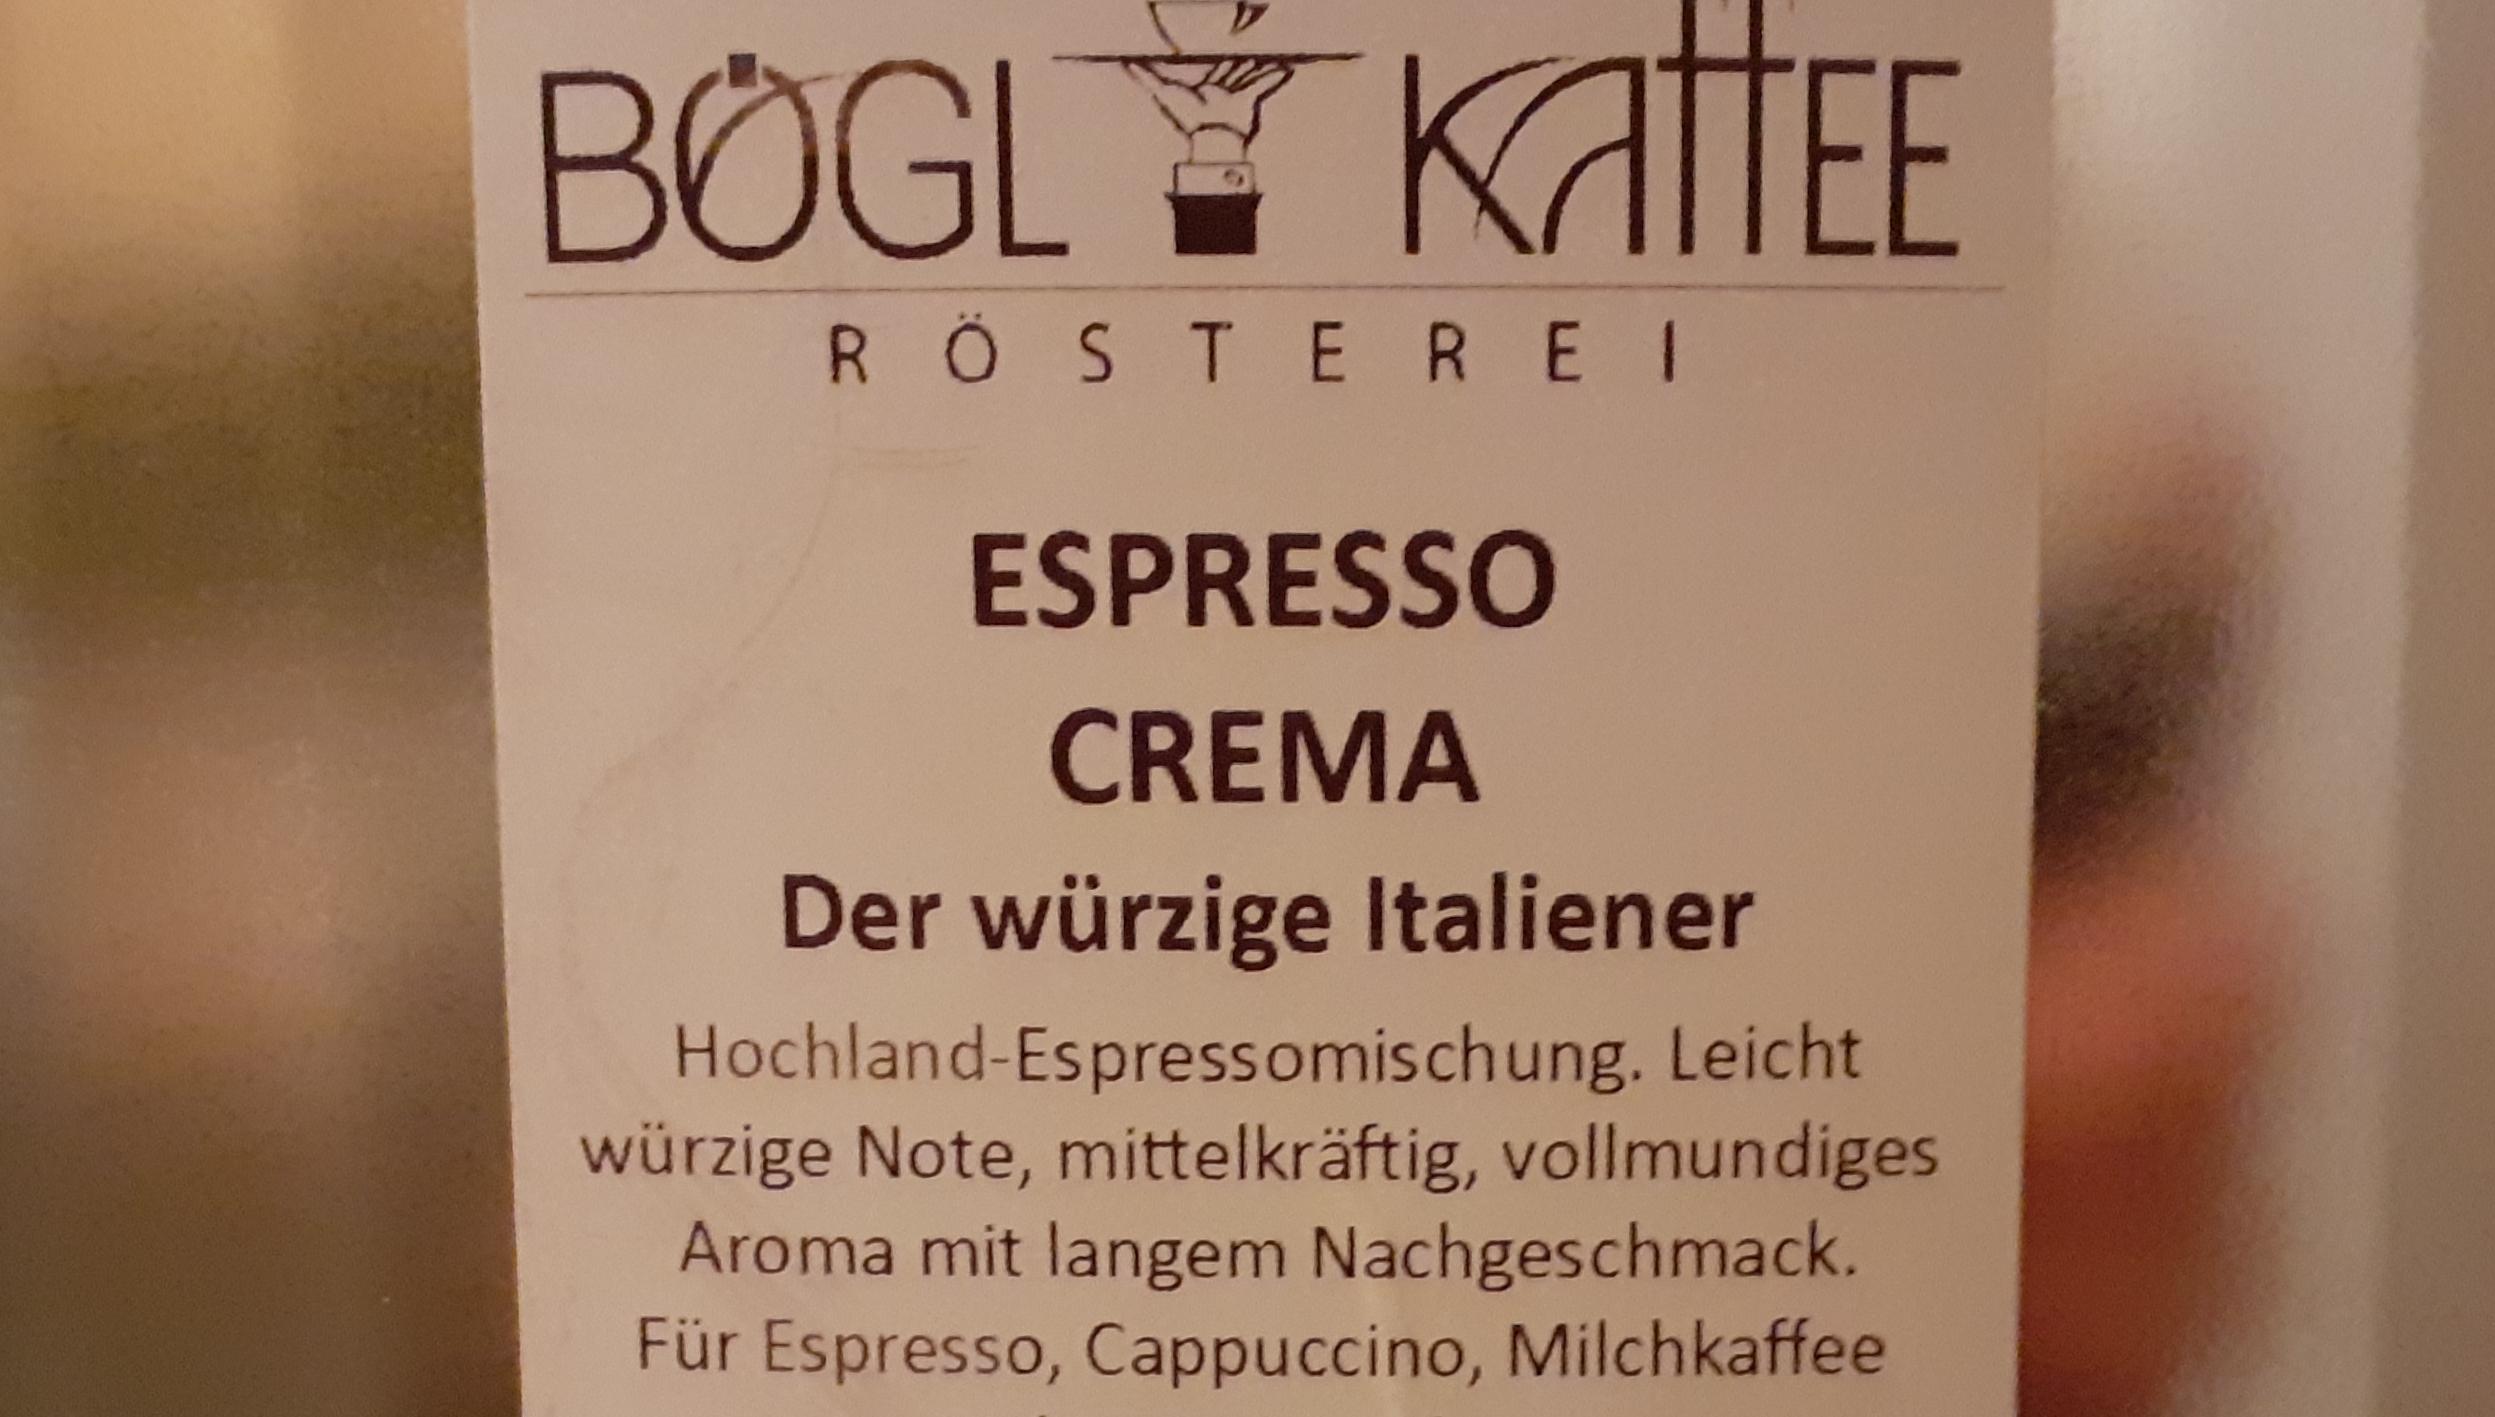 Espresso Crema - der würzige Italiener